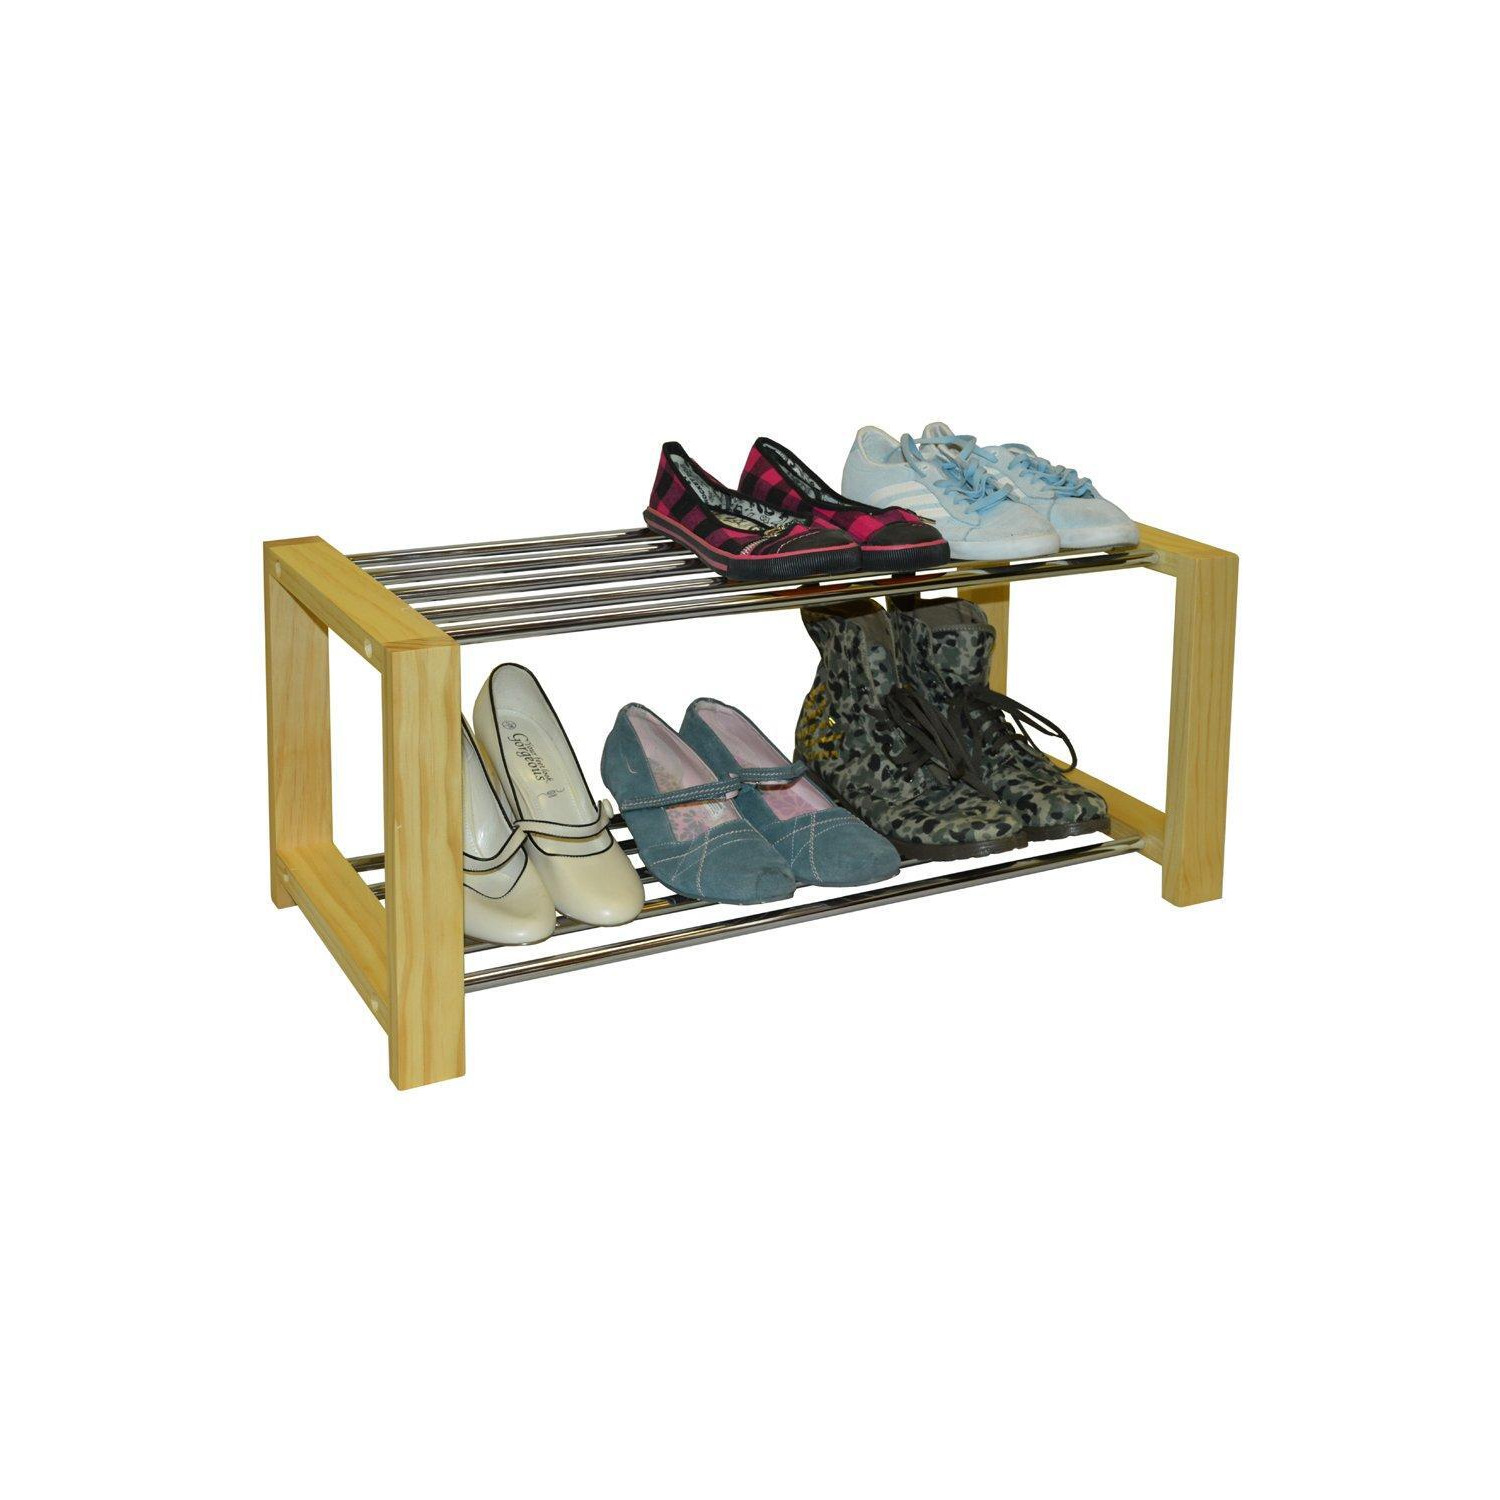 'Sleek' - Solid Pine 6 Pair Shoe Storage Organiser Rack - Natural - image 1